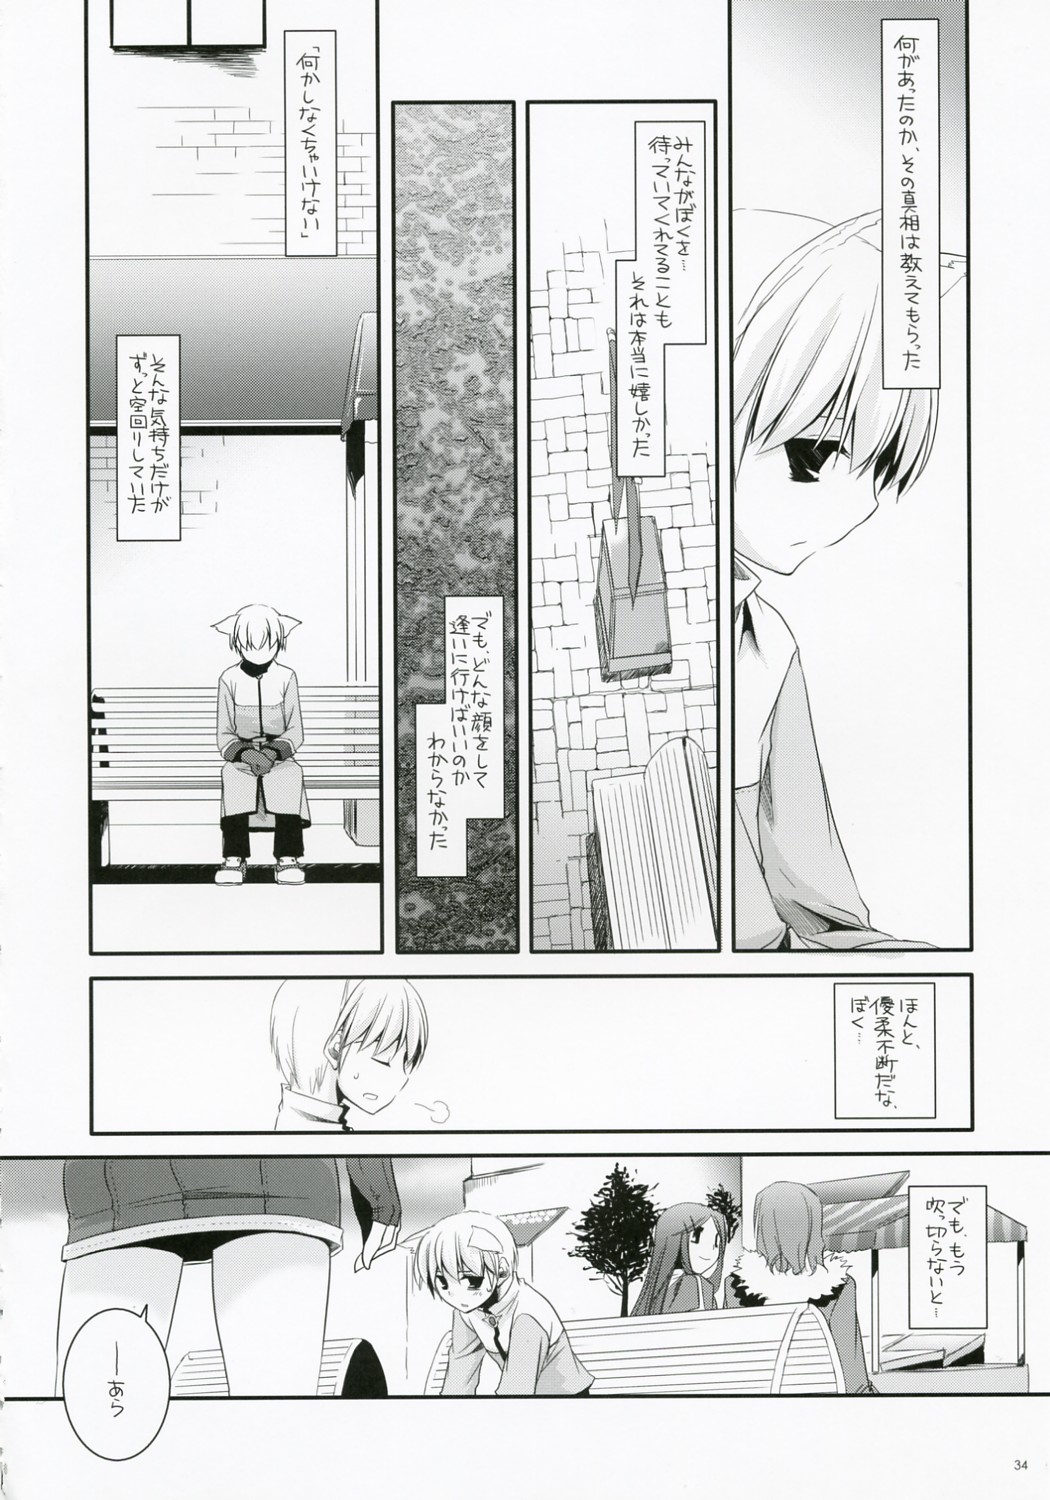 (C73) [Digital Lover (Nakajima Yuka)] D.L. Action 41 (Ragnarok Online) page 33 full